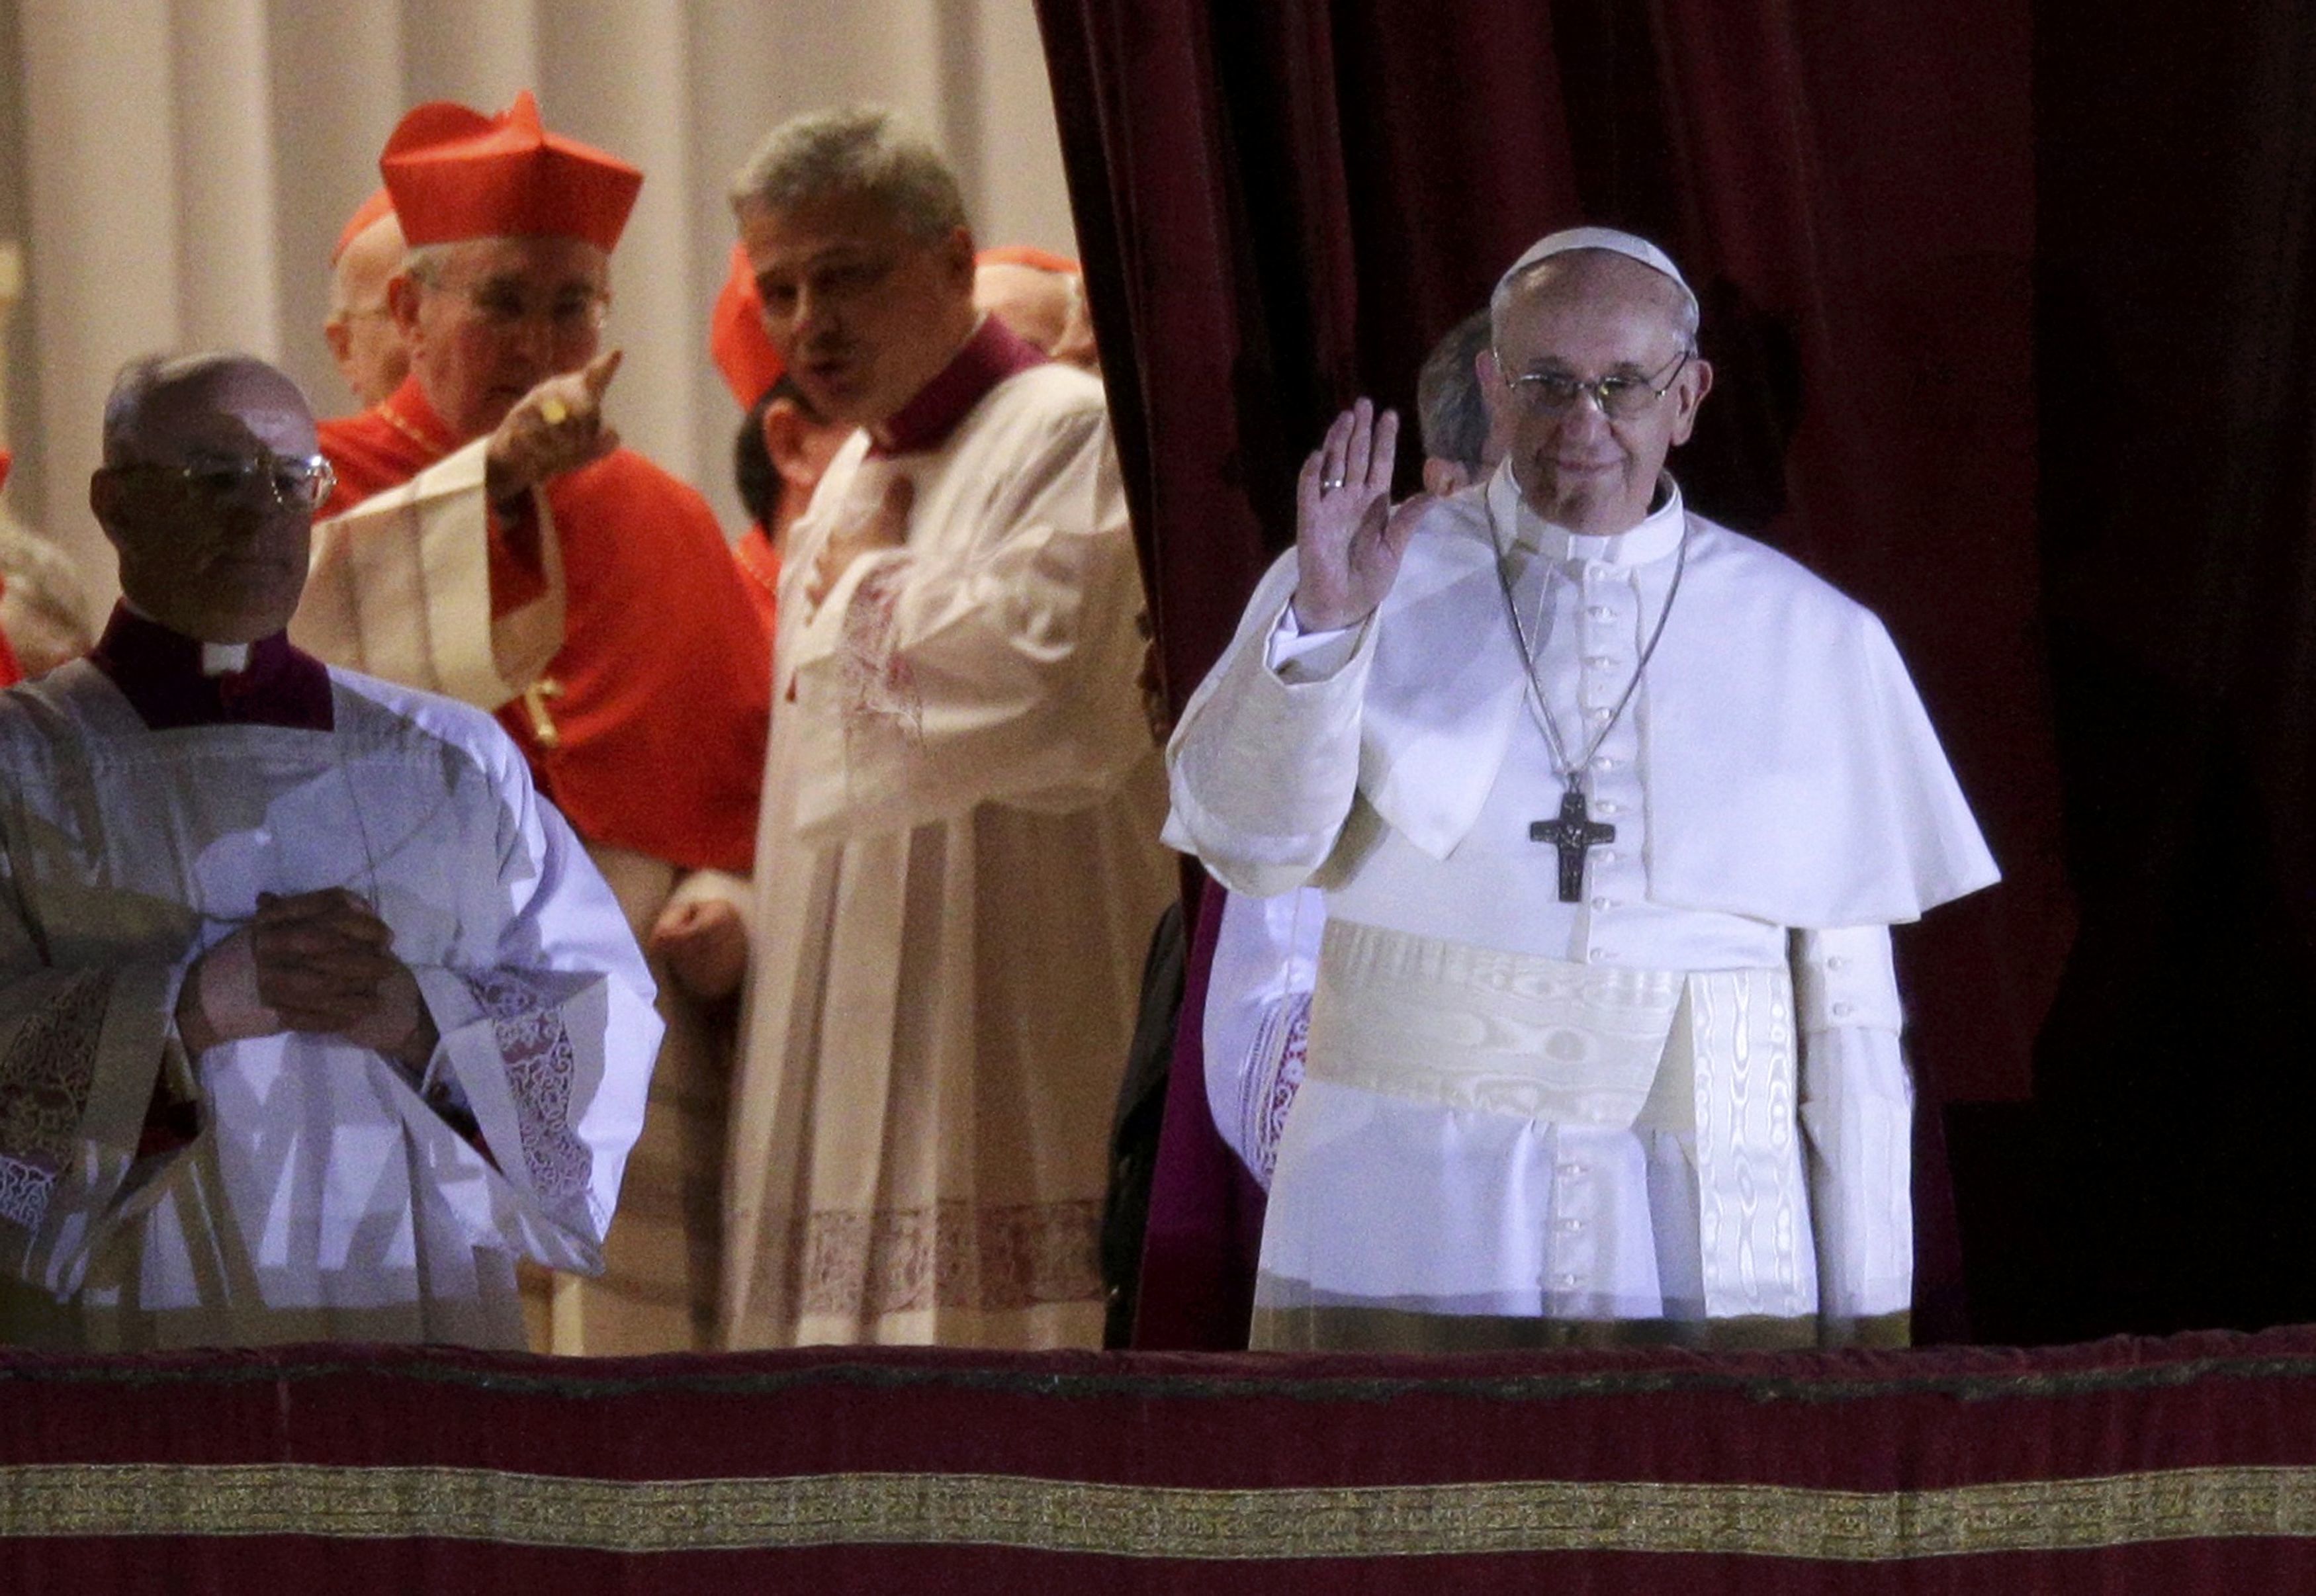 Ο Πάπας με τον μισό πνεύμονα και την πρώην αρραβωνιαστικιά – Άγνωστες πτυχές της ζωής του νέου Ποντίφηκα